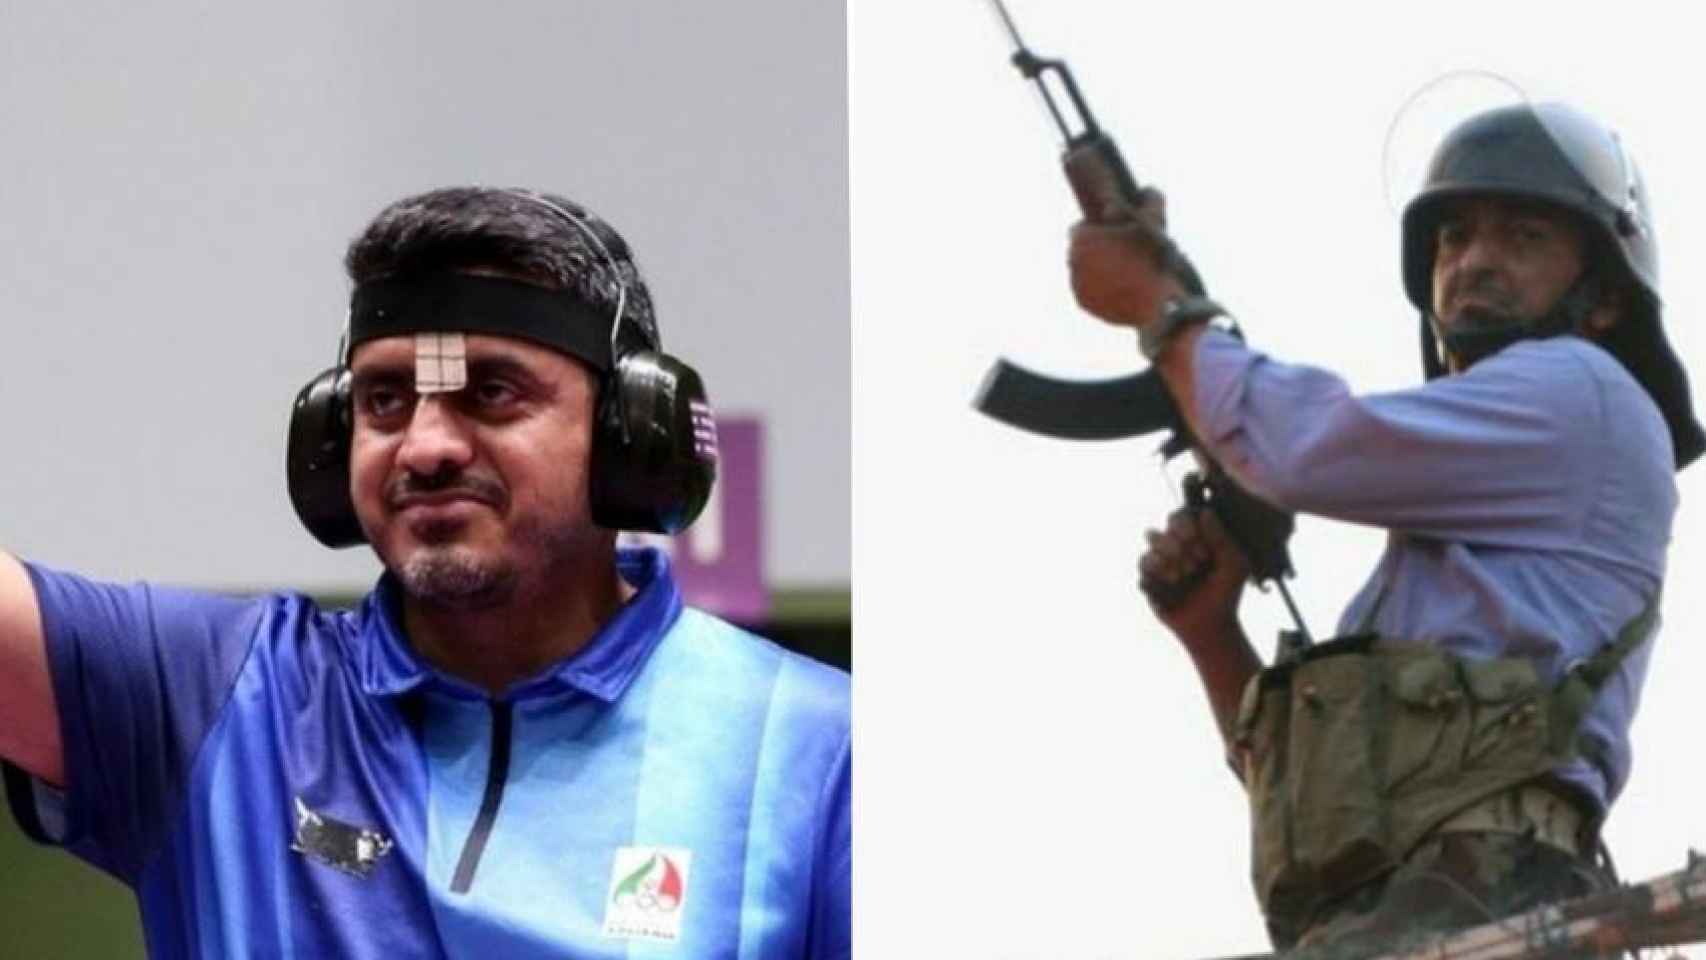 A la derecha, Javad Foroughi, a la izquierda el francotirador con un aspecto similar